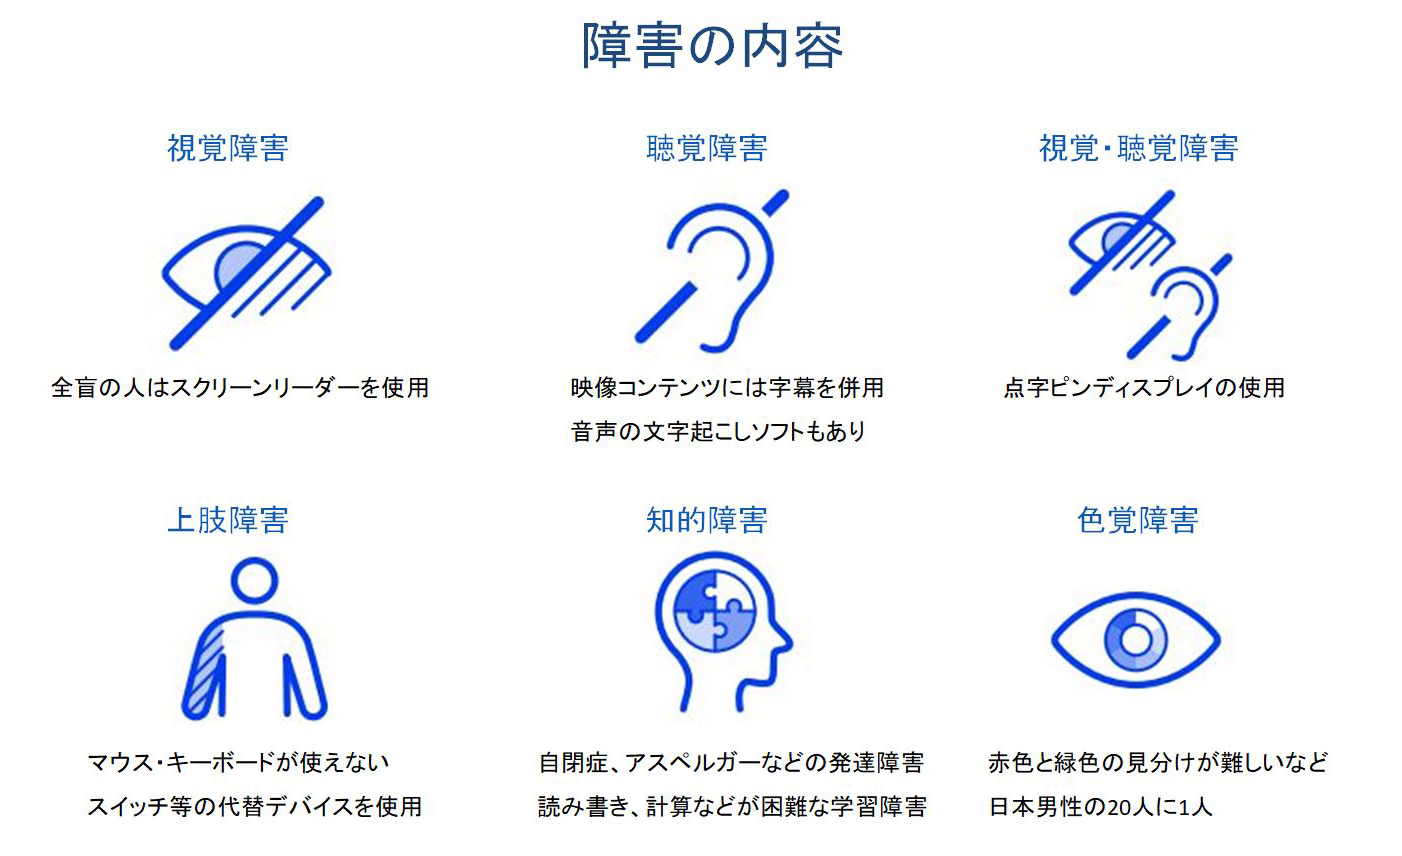 障害の内容一覧。視覚障害、聴覚障害、上肢障害、その他